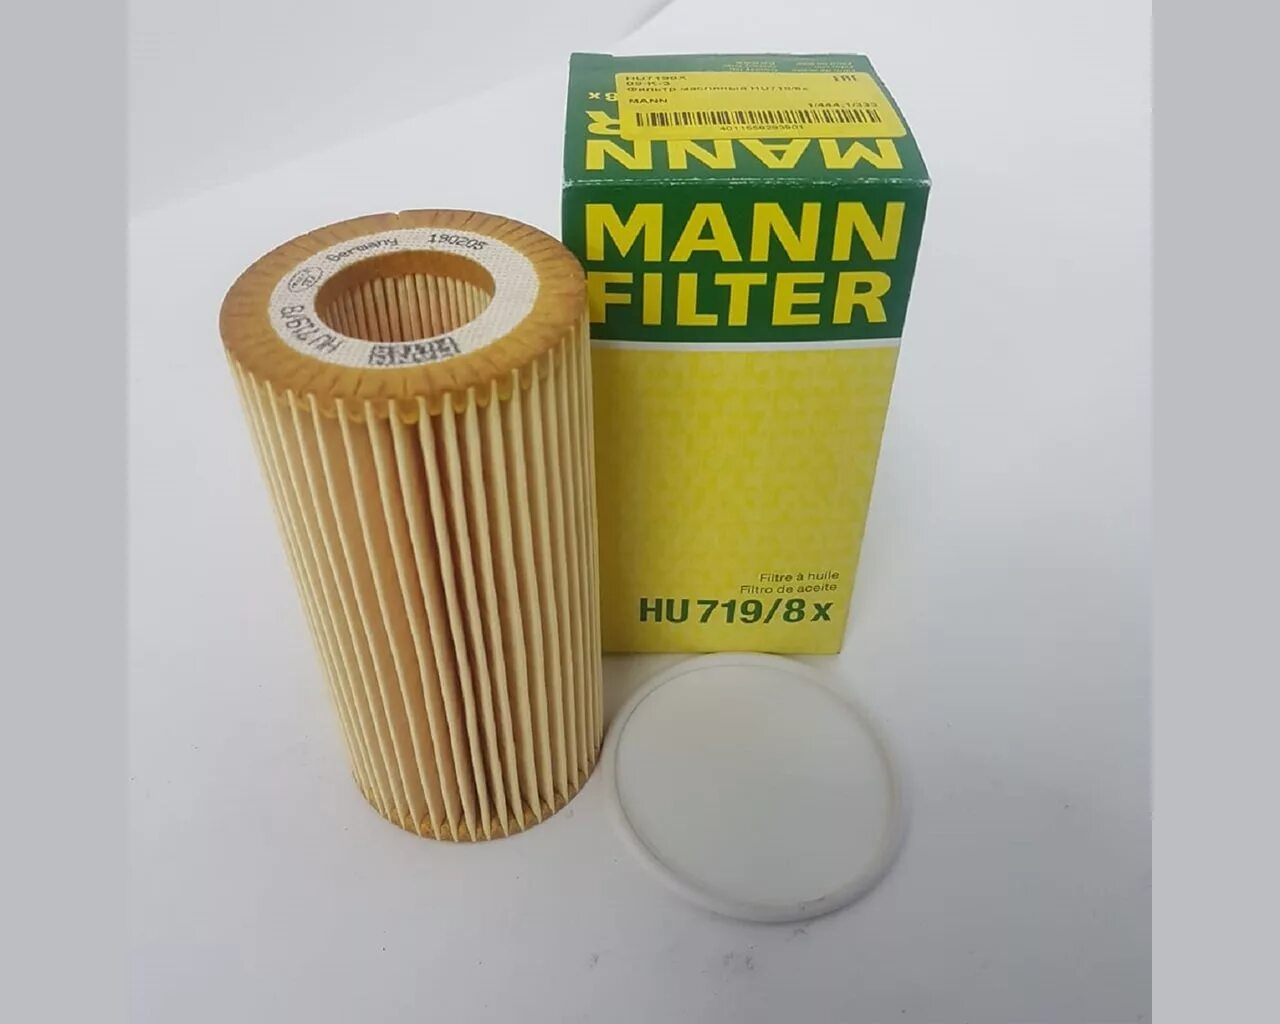 Масляный фильтр вставка. Mann hu719/8x. Масляный фильтр Mann hu719/8x. Hu 719/8 x фильтр масляный. Hu 719/8 x фильтр масляный (вставка) Mann.